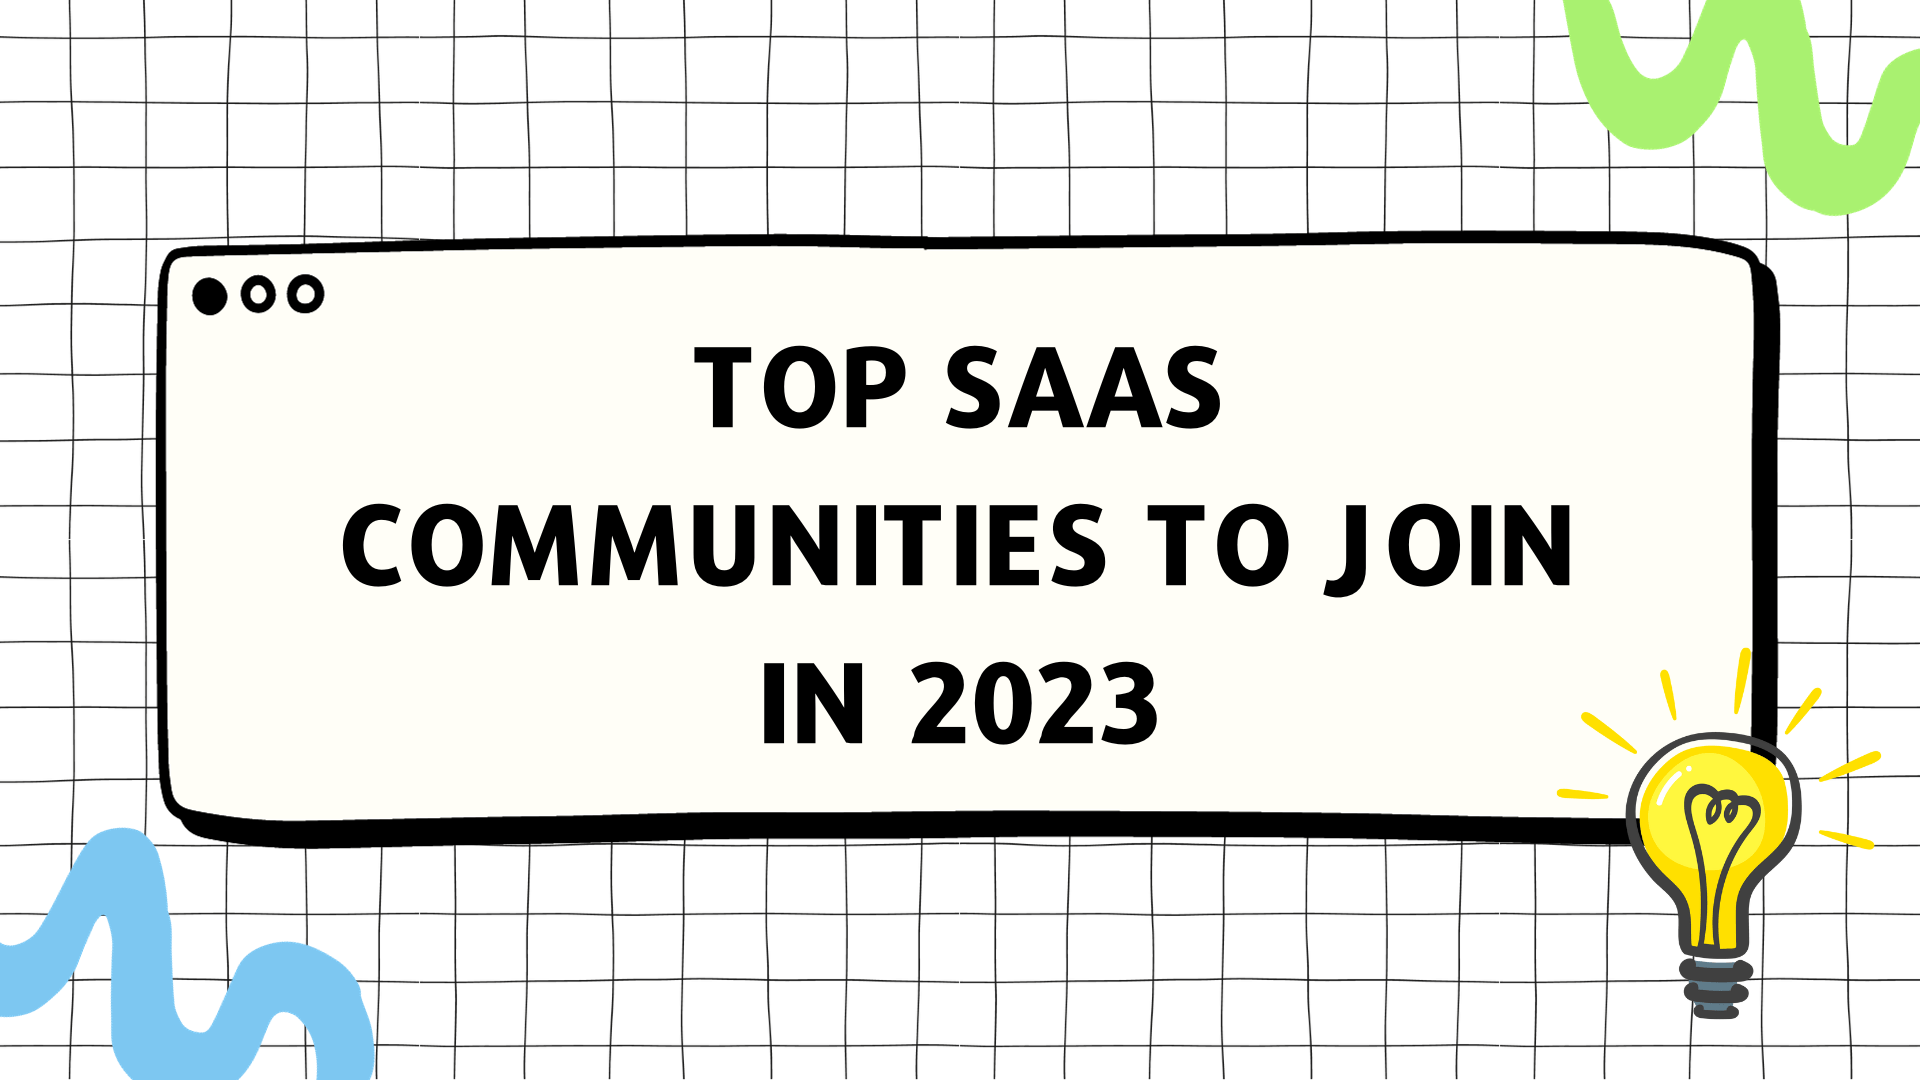 SAAS COMMUNITIES IN 2023